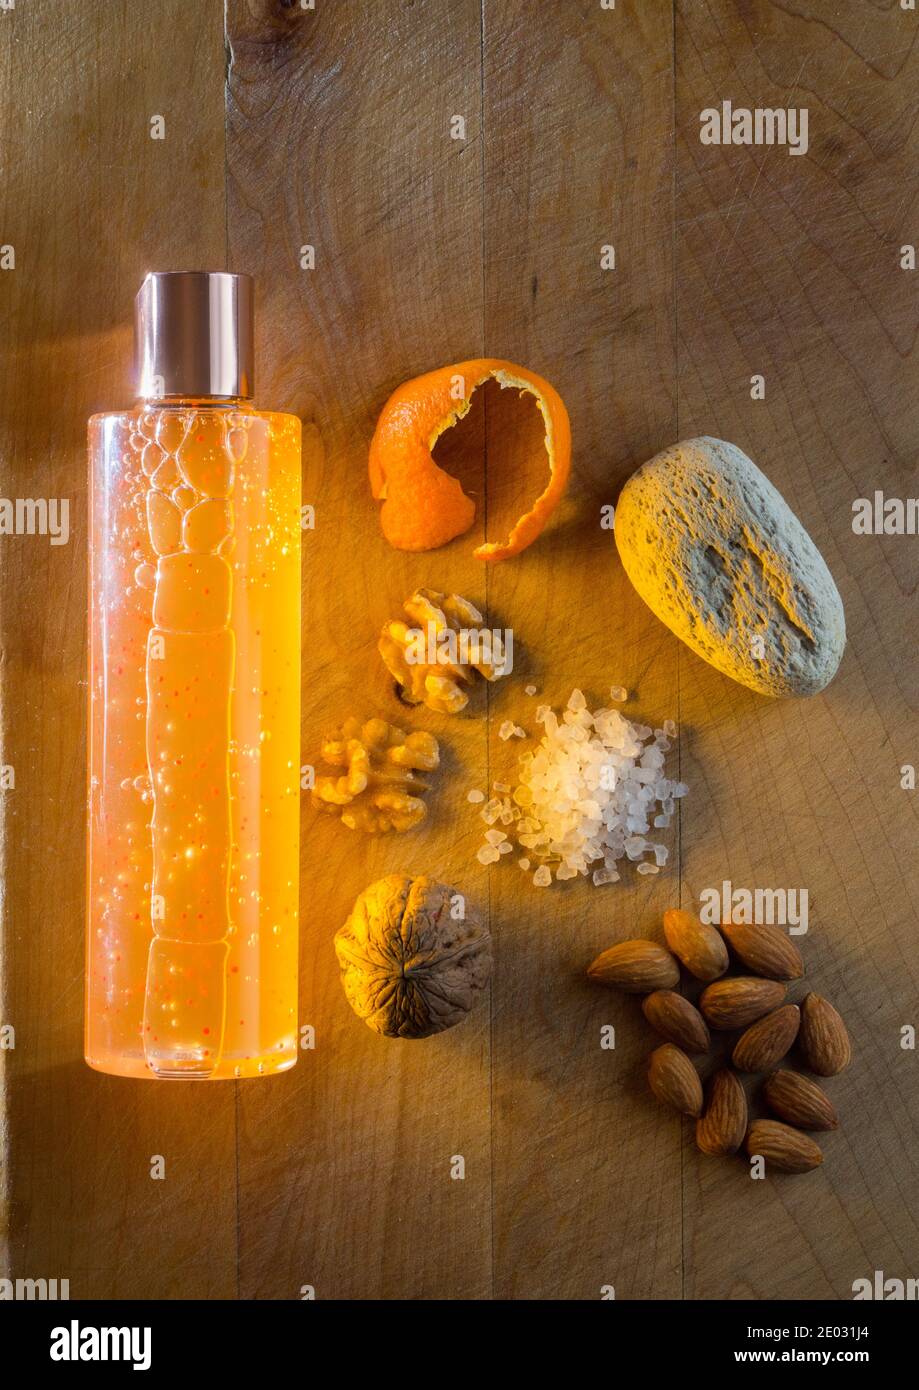 Imagen de la vida de los estudios de las alternativas de los microplásticos, con una botella de champú, nueces, conchas de nogal, cáscara de naranja, pumice, sal de roca, y almendras. Foto de stock